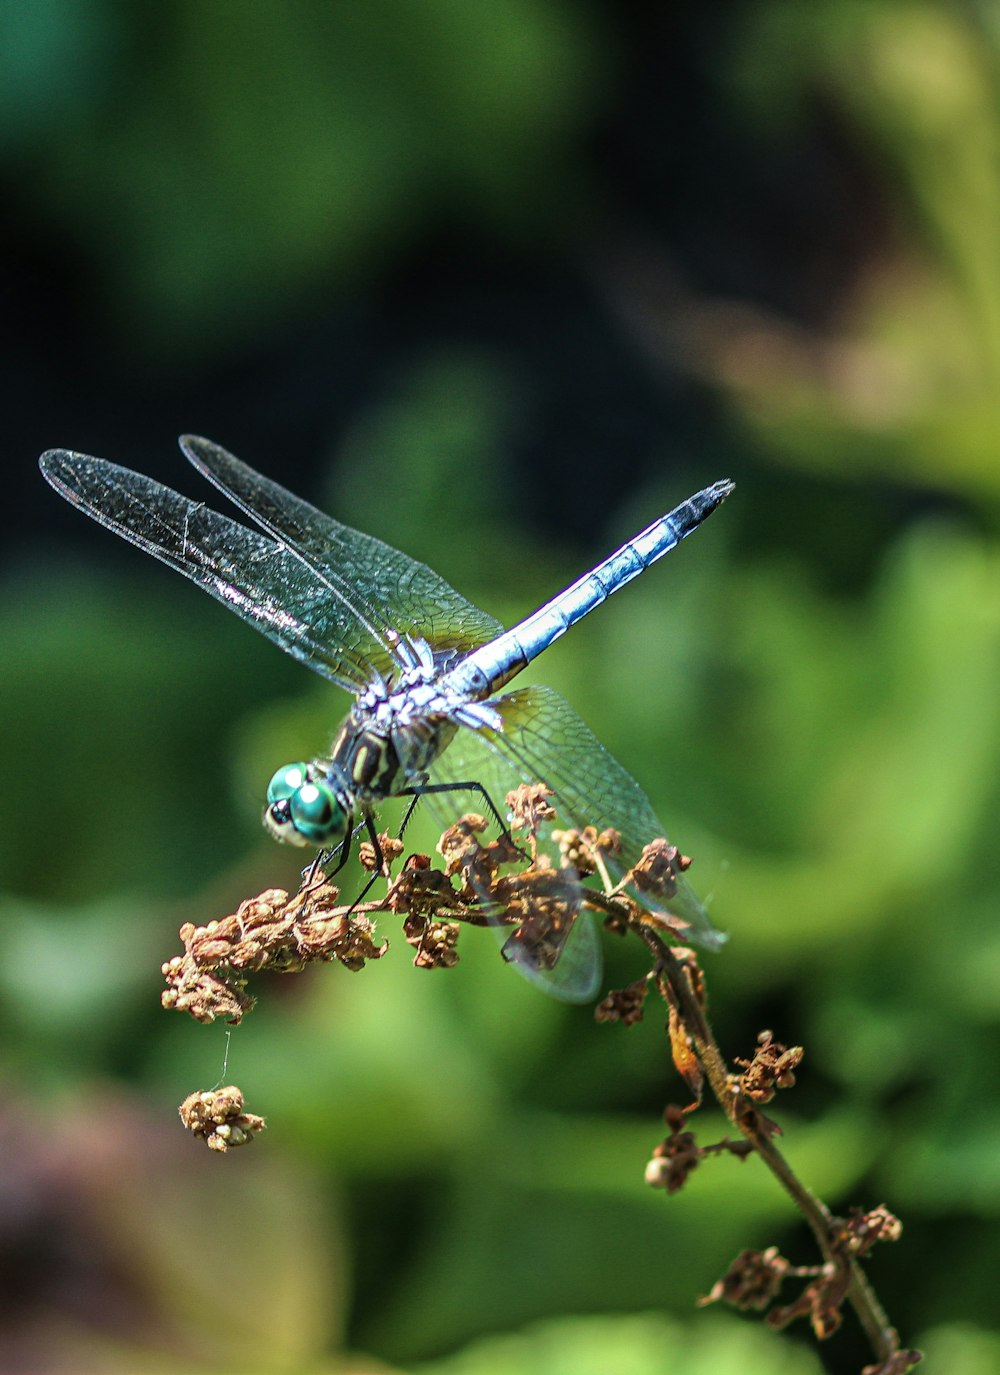 libélula azul e branca empoleirada no caule marrom da planta em fotografia de perto durante o dia